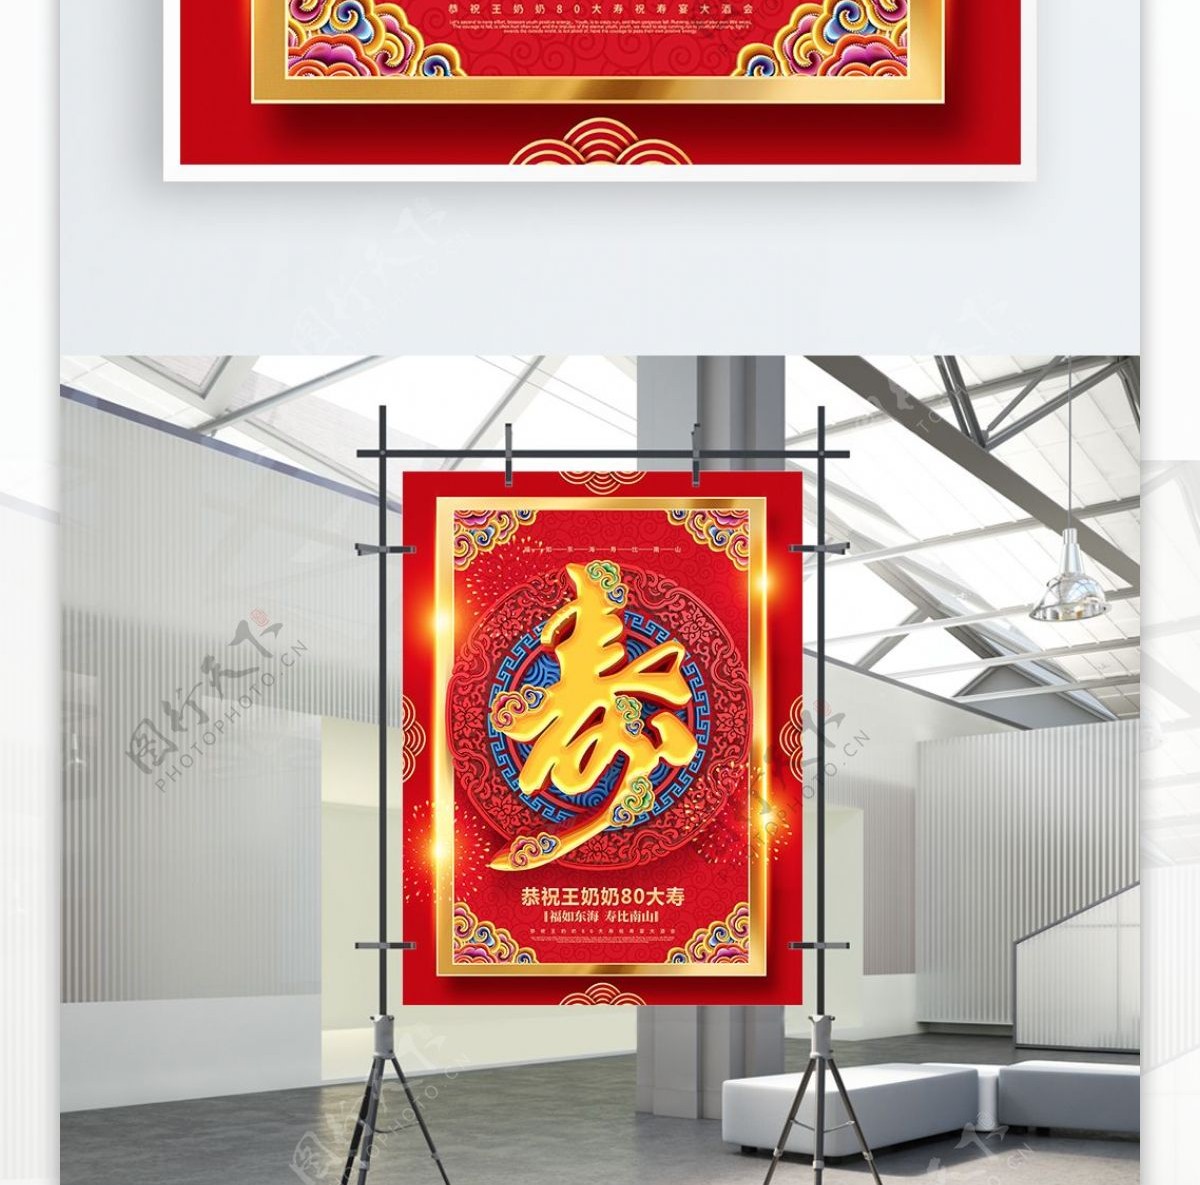 创意红金喜庆大气中国风寿字寿宴宣传海报